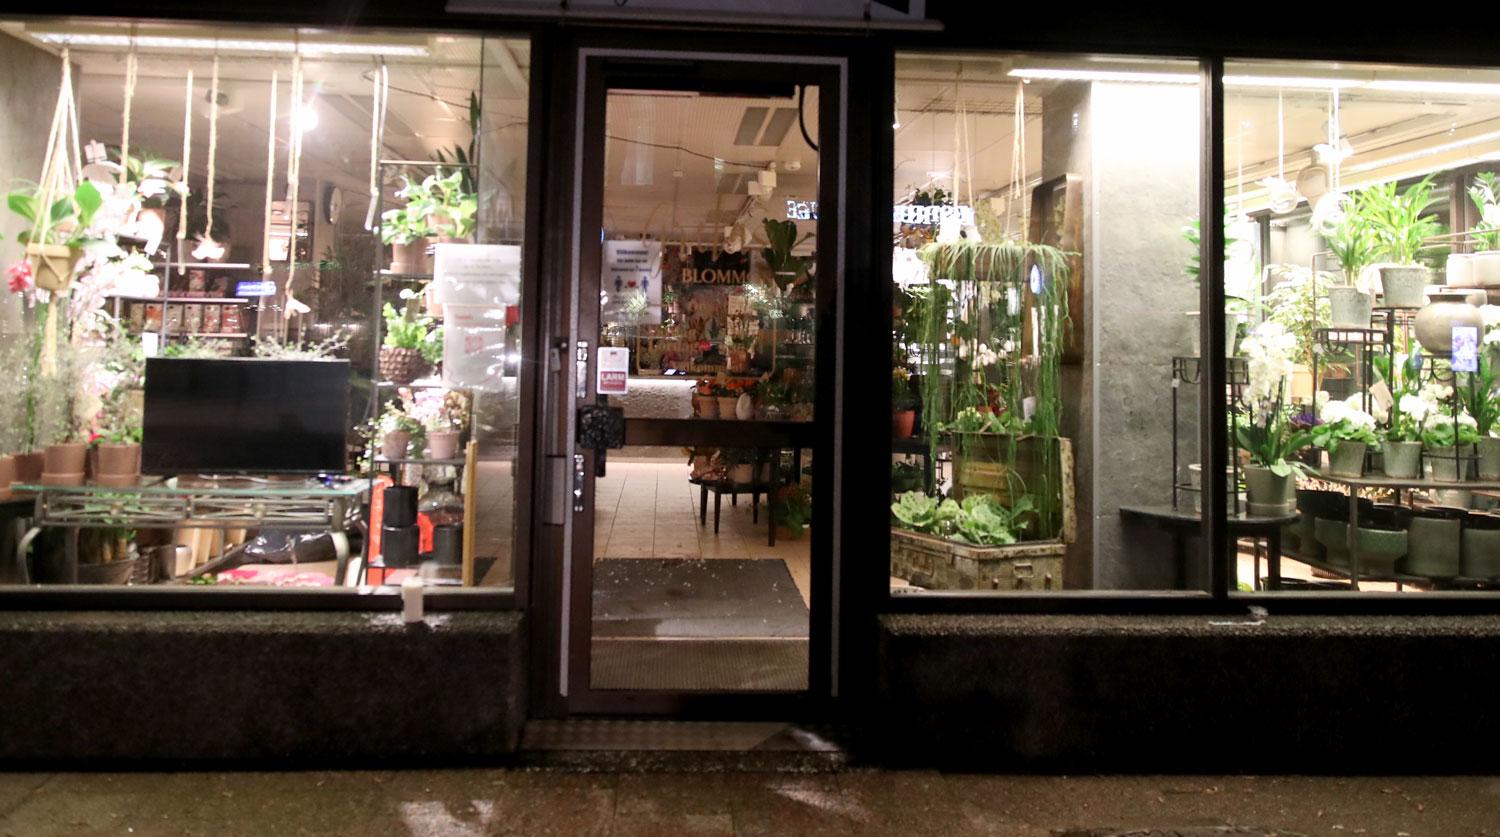 Blomsterhandeln på Storgatan i Vetlanda. På golvet inne i butiken syns stora fläckar av blod. 